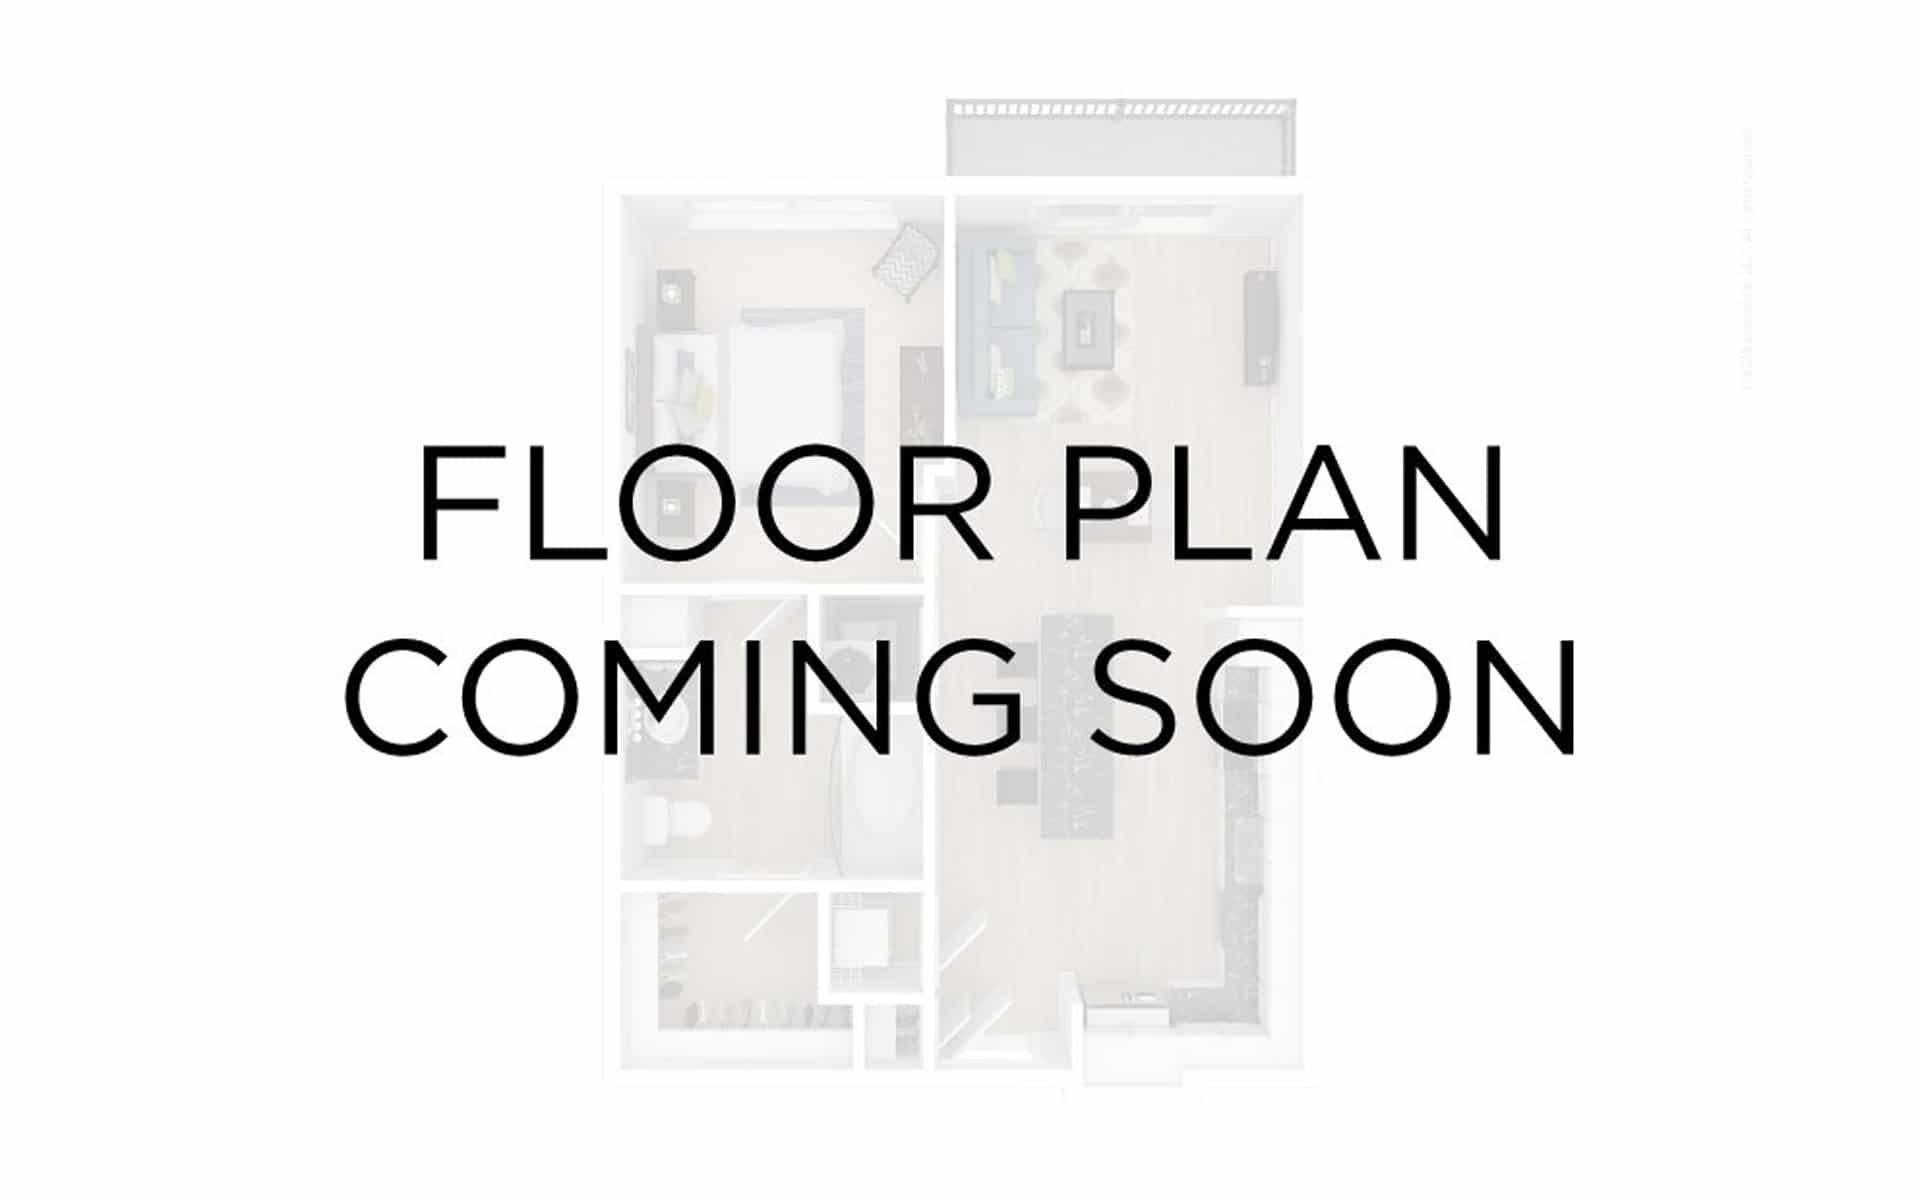 "Floor Plan Coming Soon" On Top Of A Rendered Plan